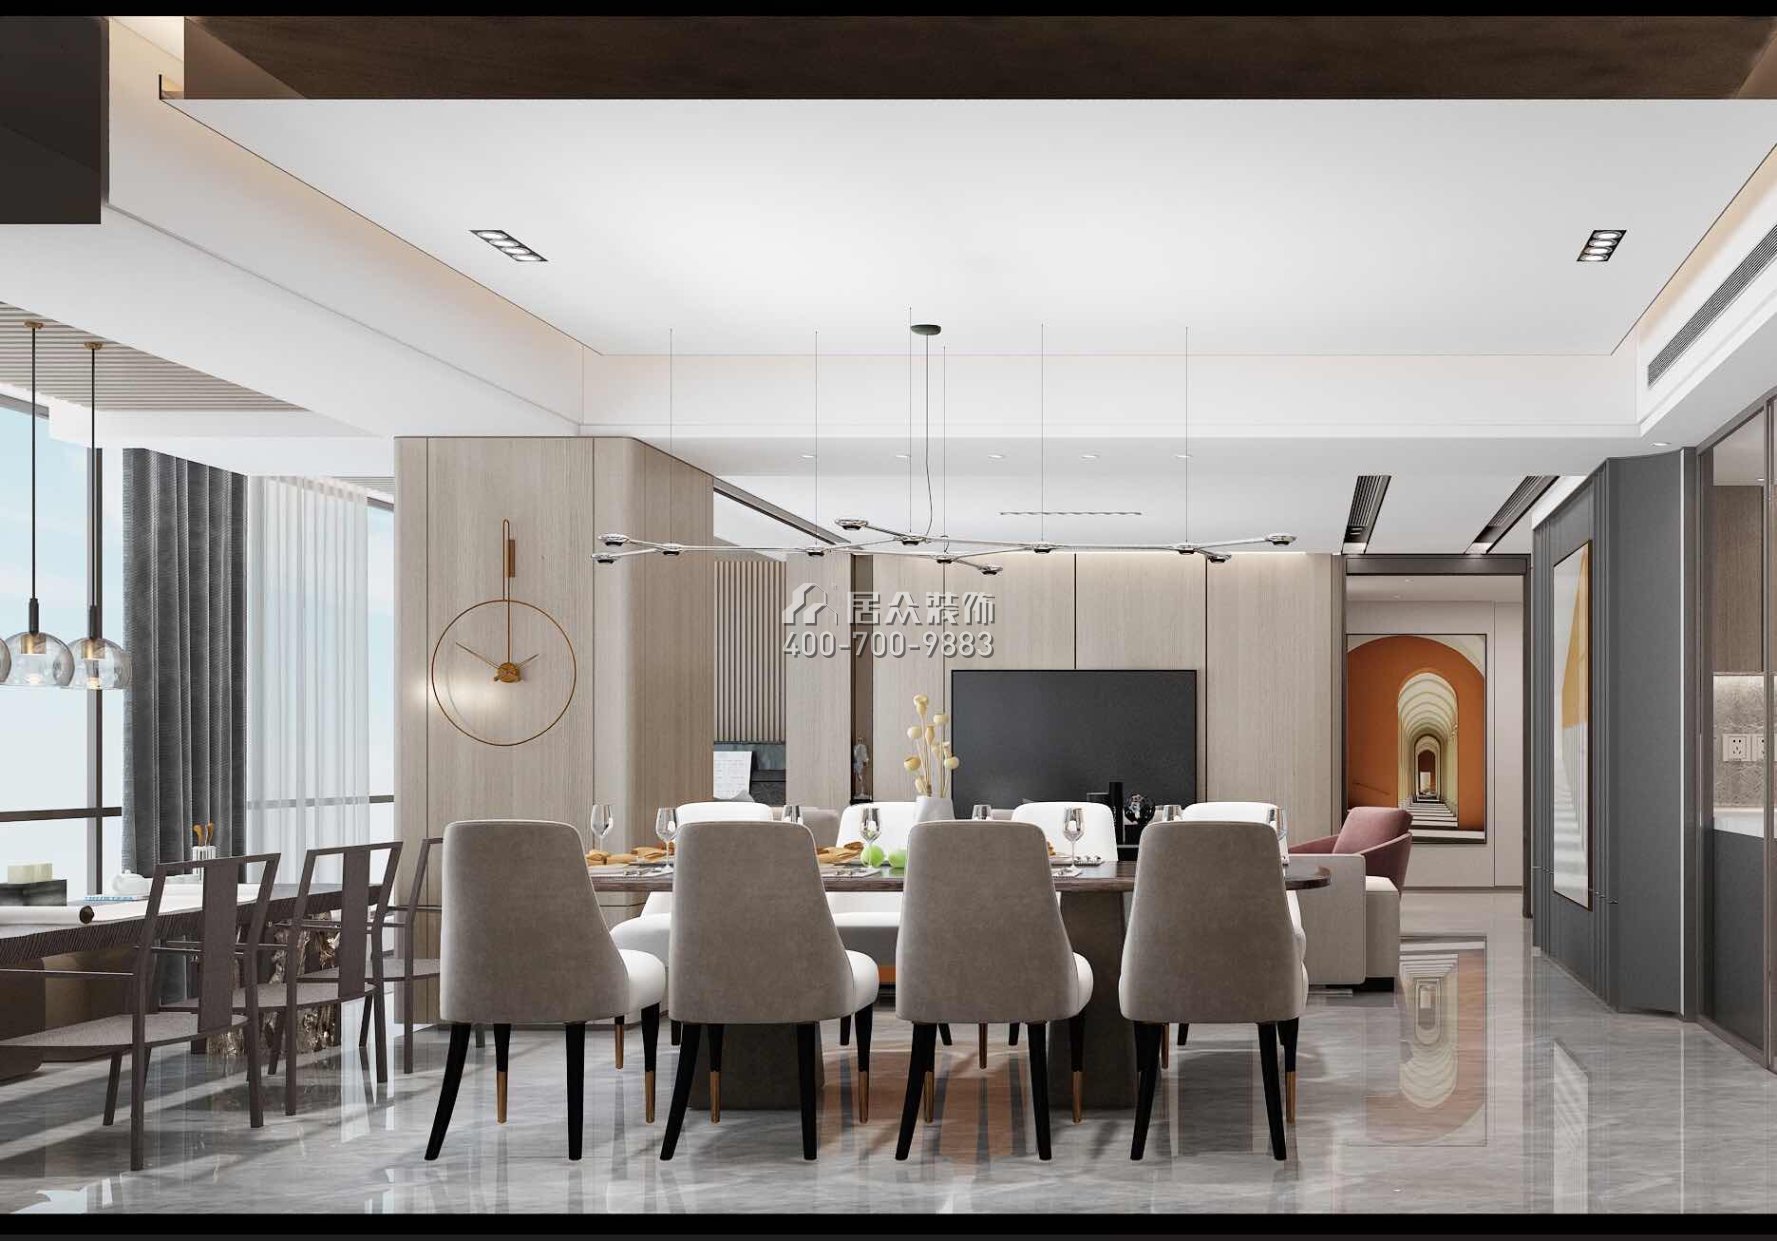 華潤城潤府198平方米現代簡約風格平層戶型餐廳裝修效果圖